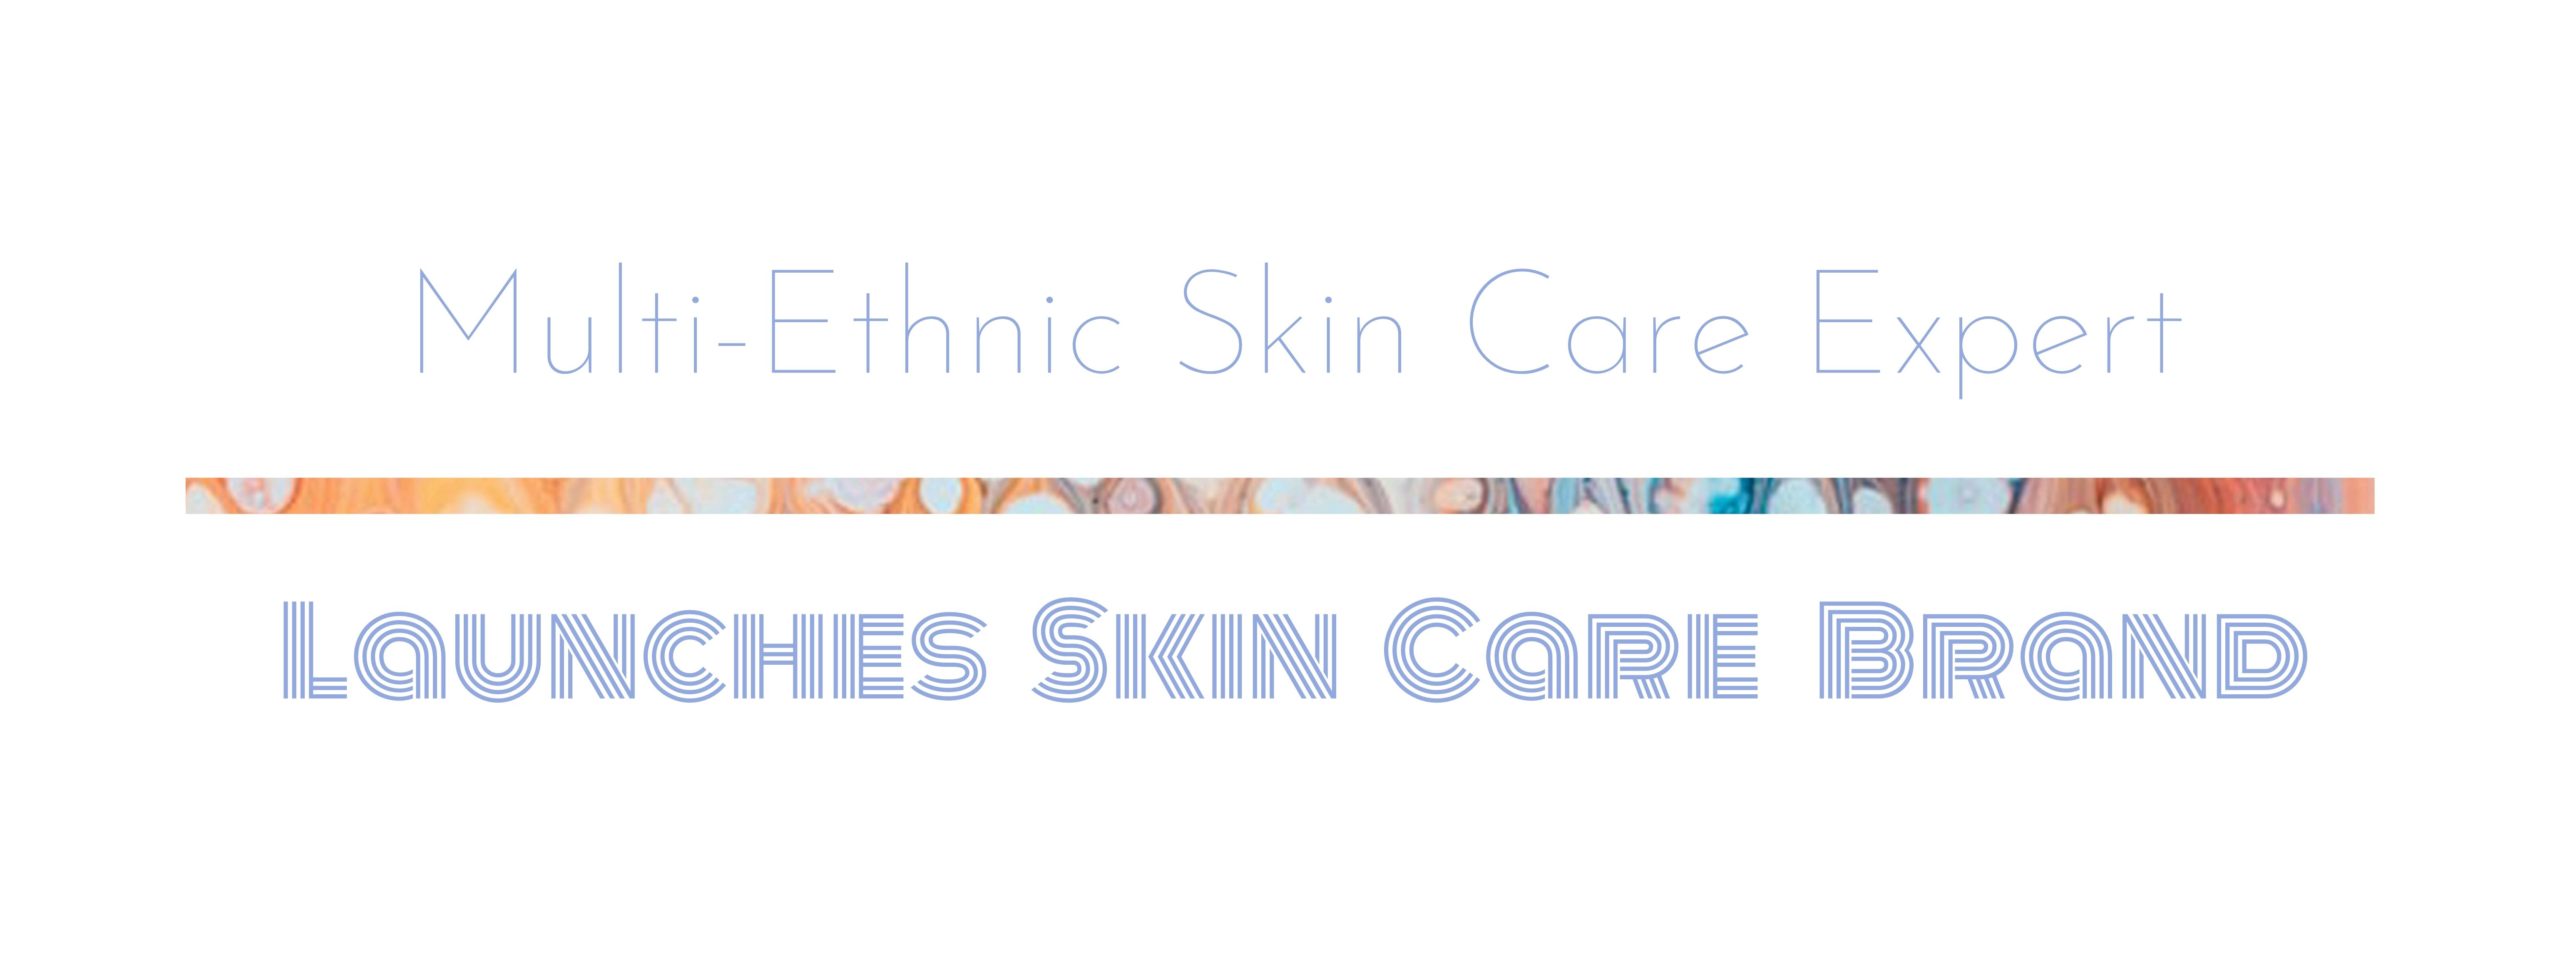 mulit-ethnic skin care